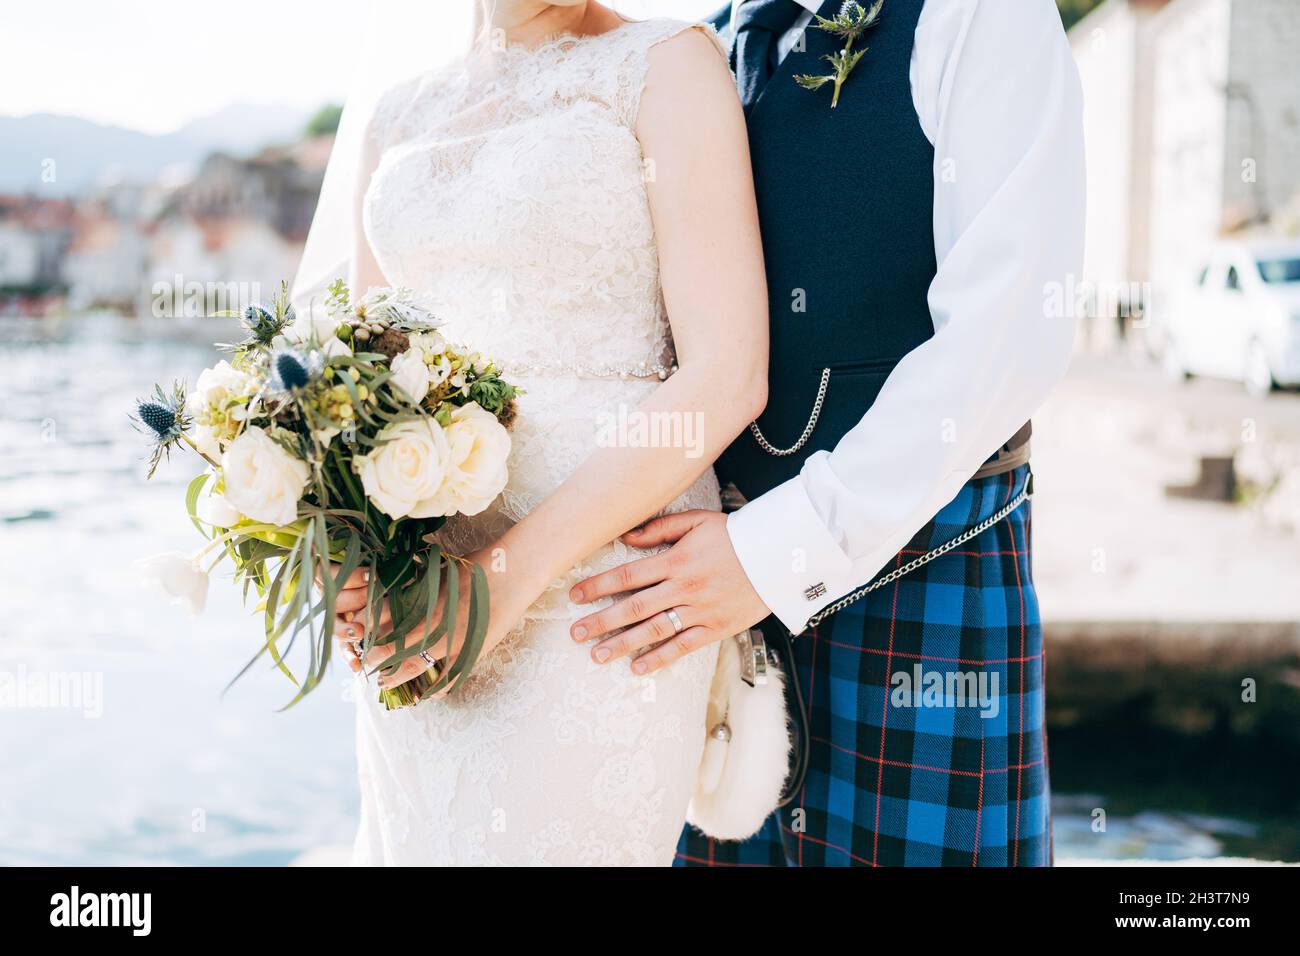 Une mariée dans une robe de mariage avec un bouquet de mariée et un marié  dans une robe nationale écossaise stand embrassant sur la jetée Photo Stock  - Alamy